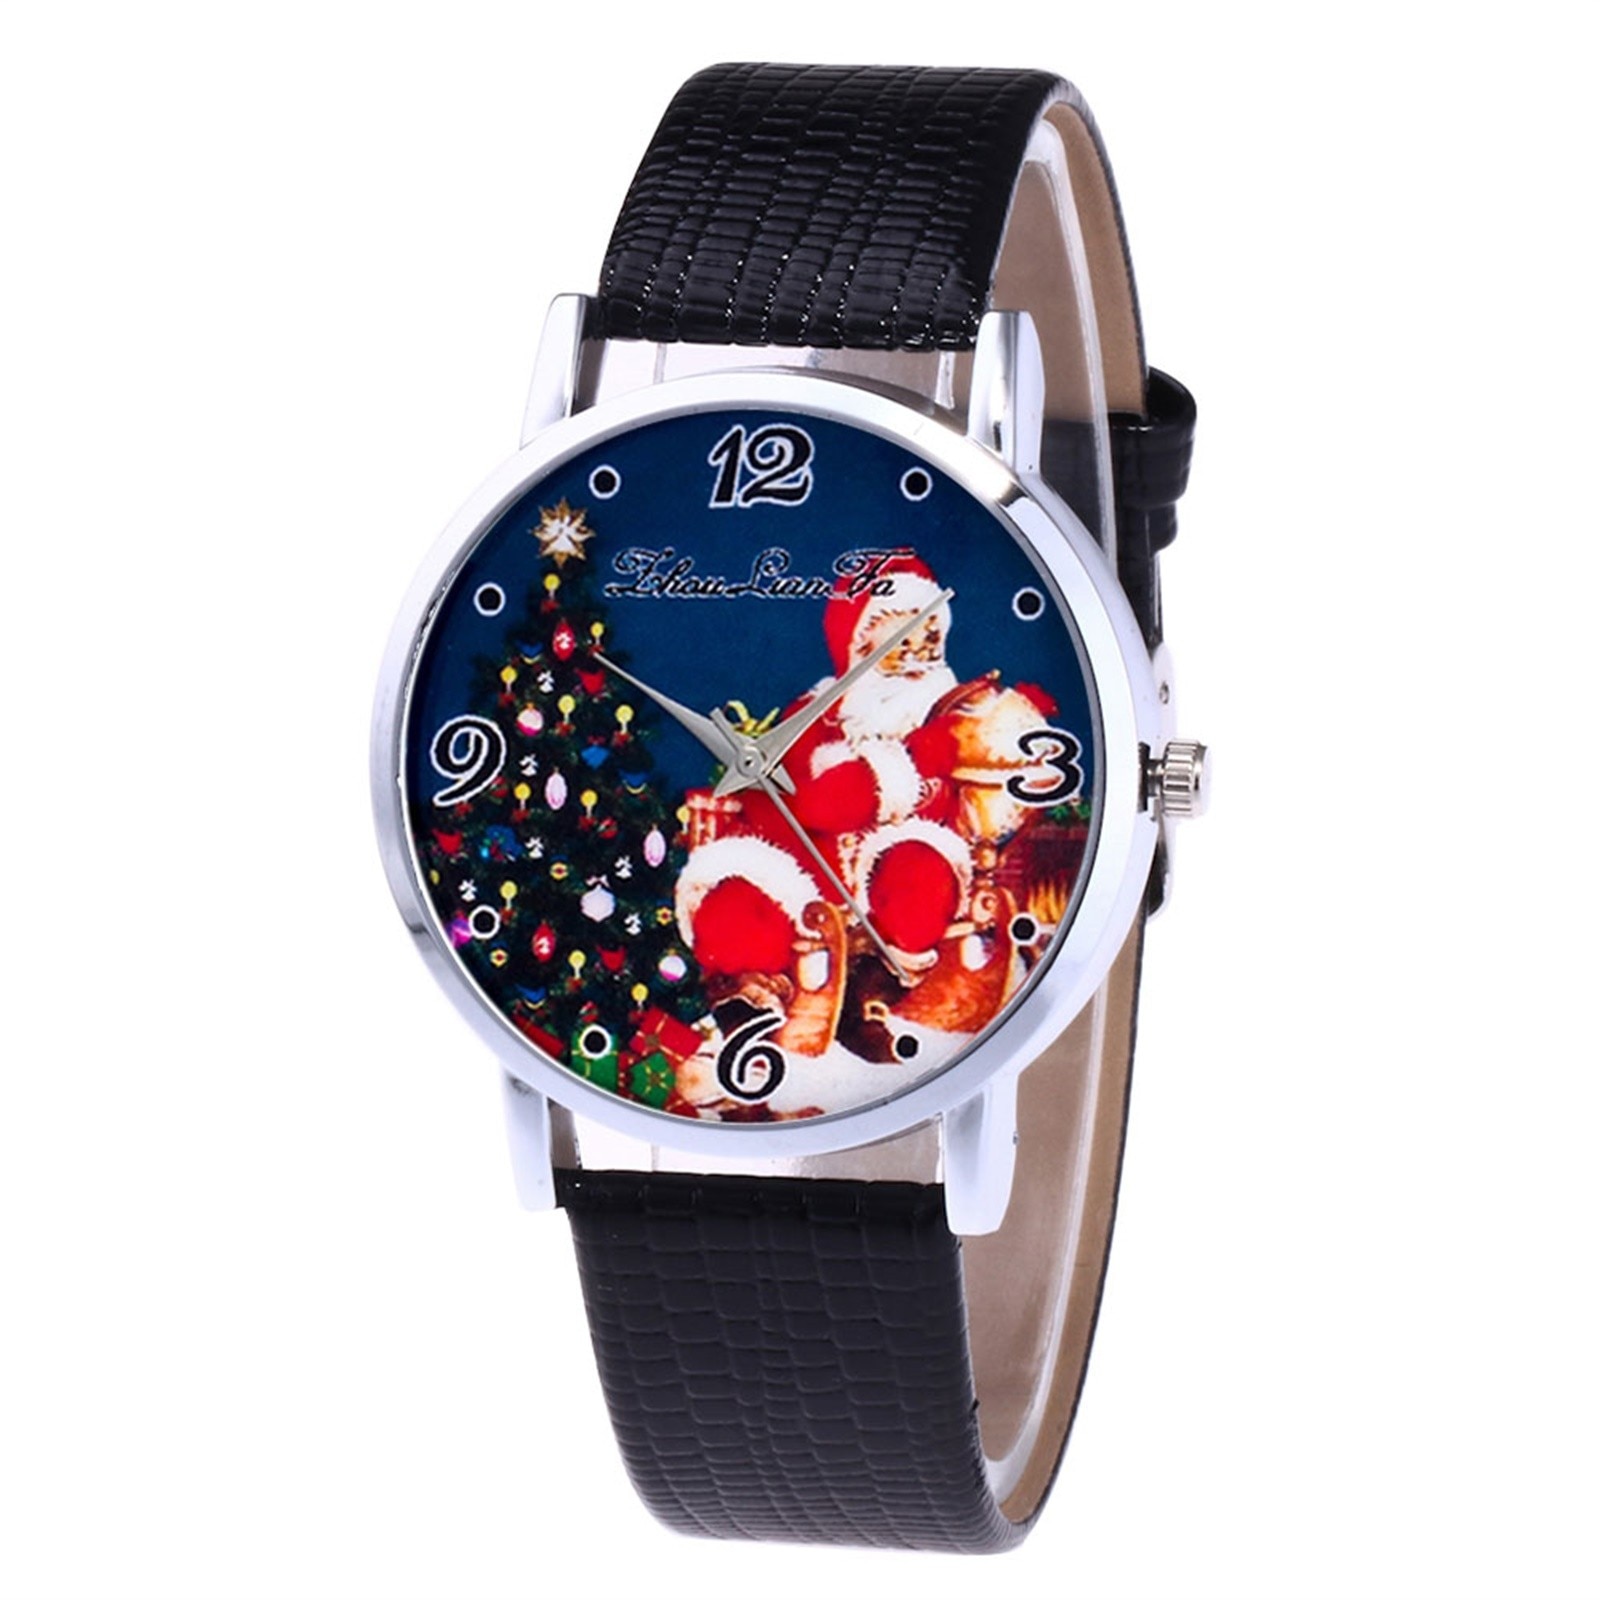 Vrouwen Horloges Business Sport Leisure Quartz Horloge Christmas Gedrukt Wijzerplaat Mannen Ingelegd Met Diamanten Digitale Klok Relogio